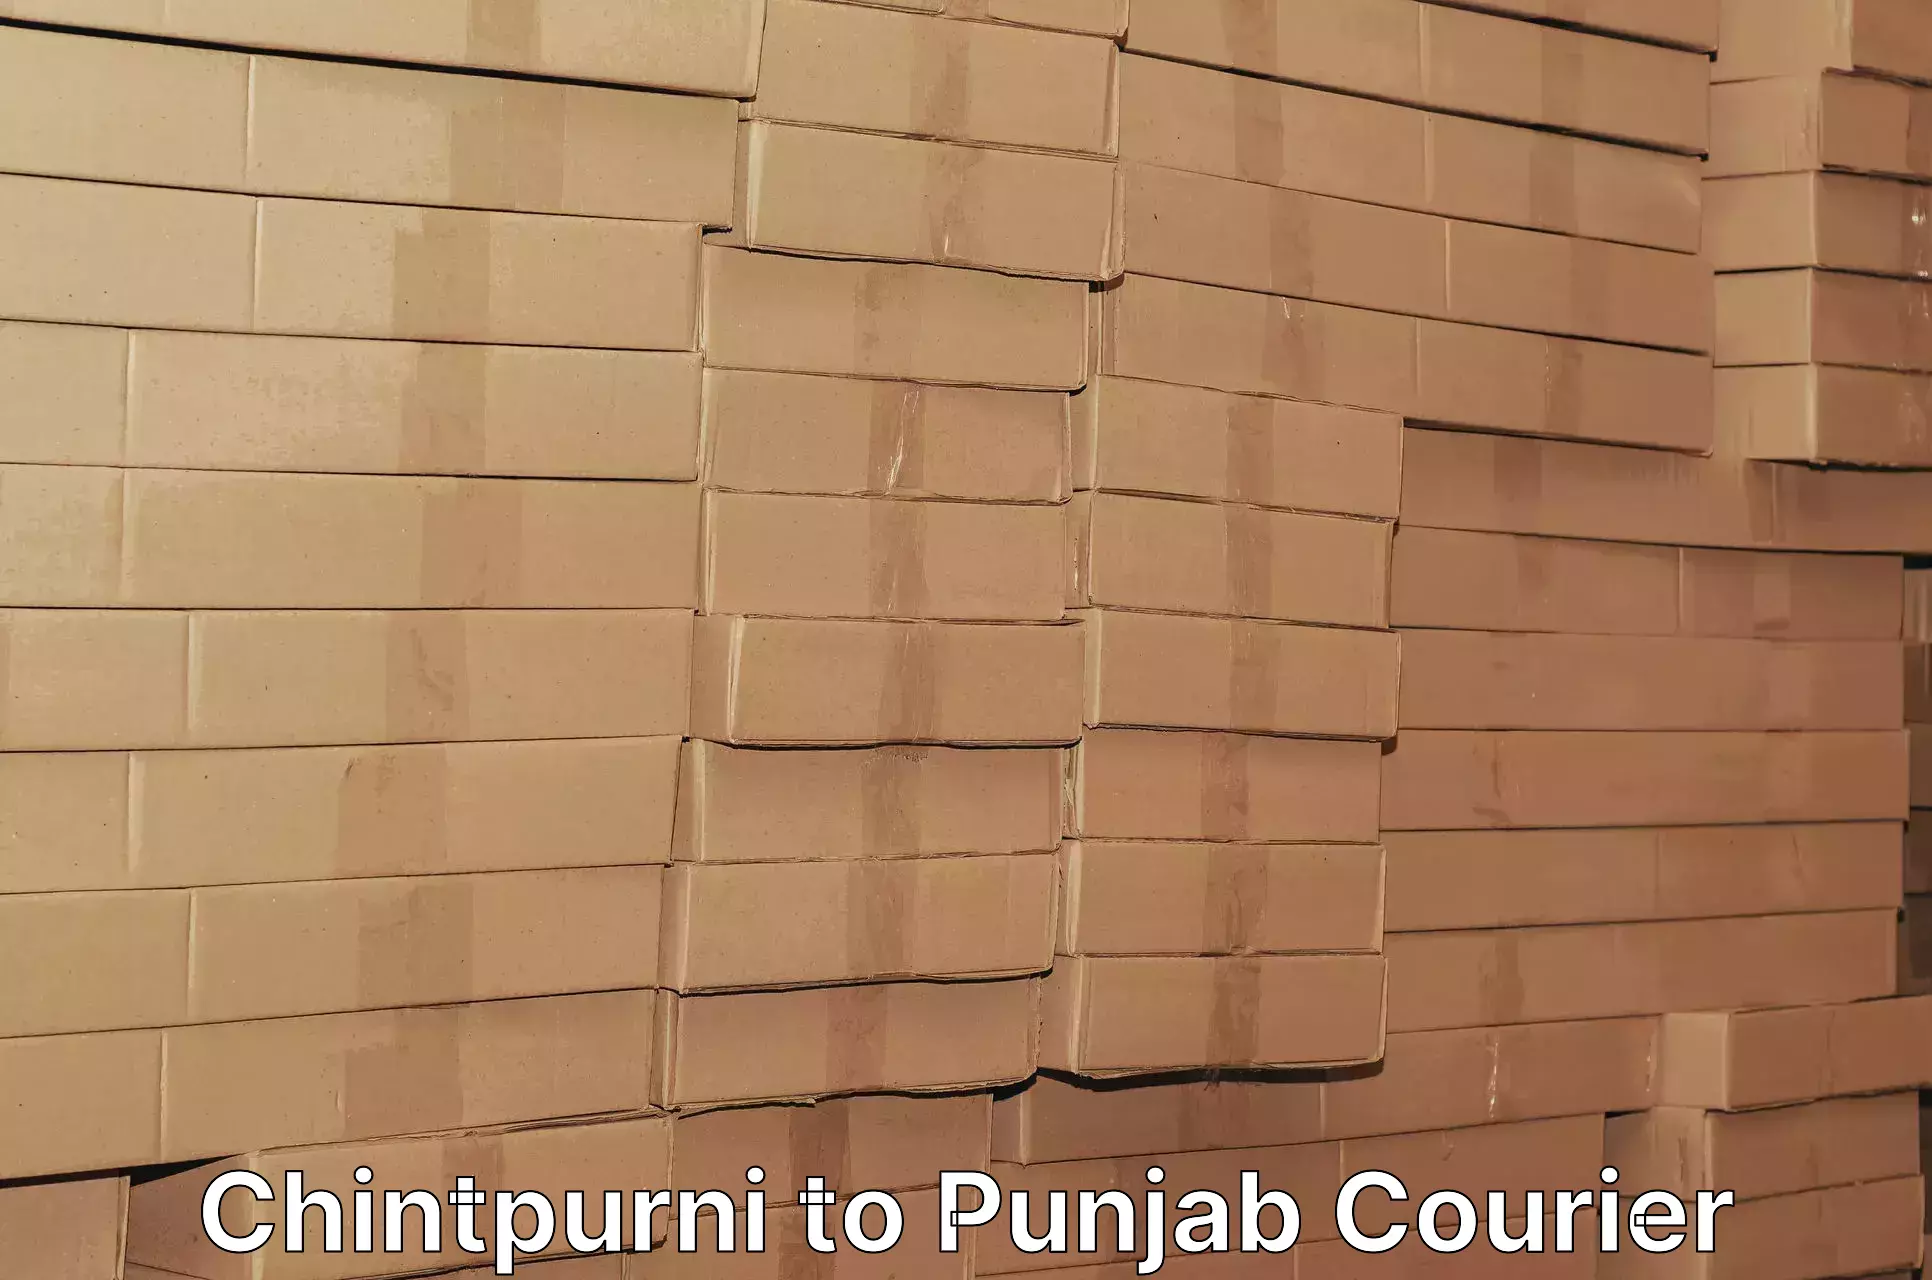 Urban courier service Chintpurni to Punjab